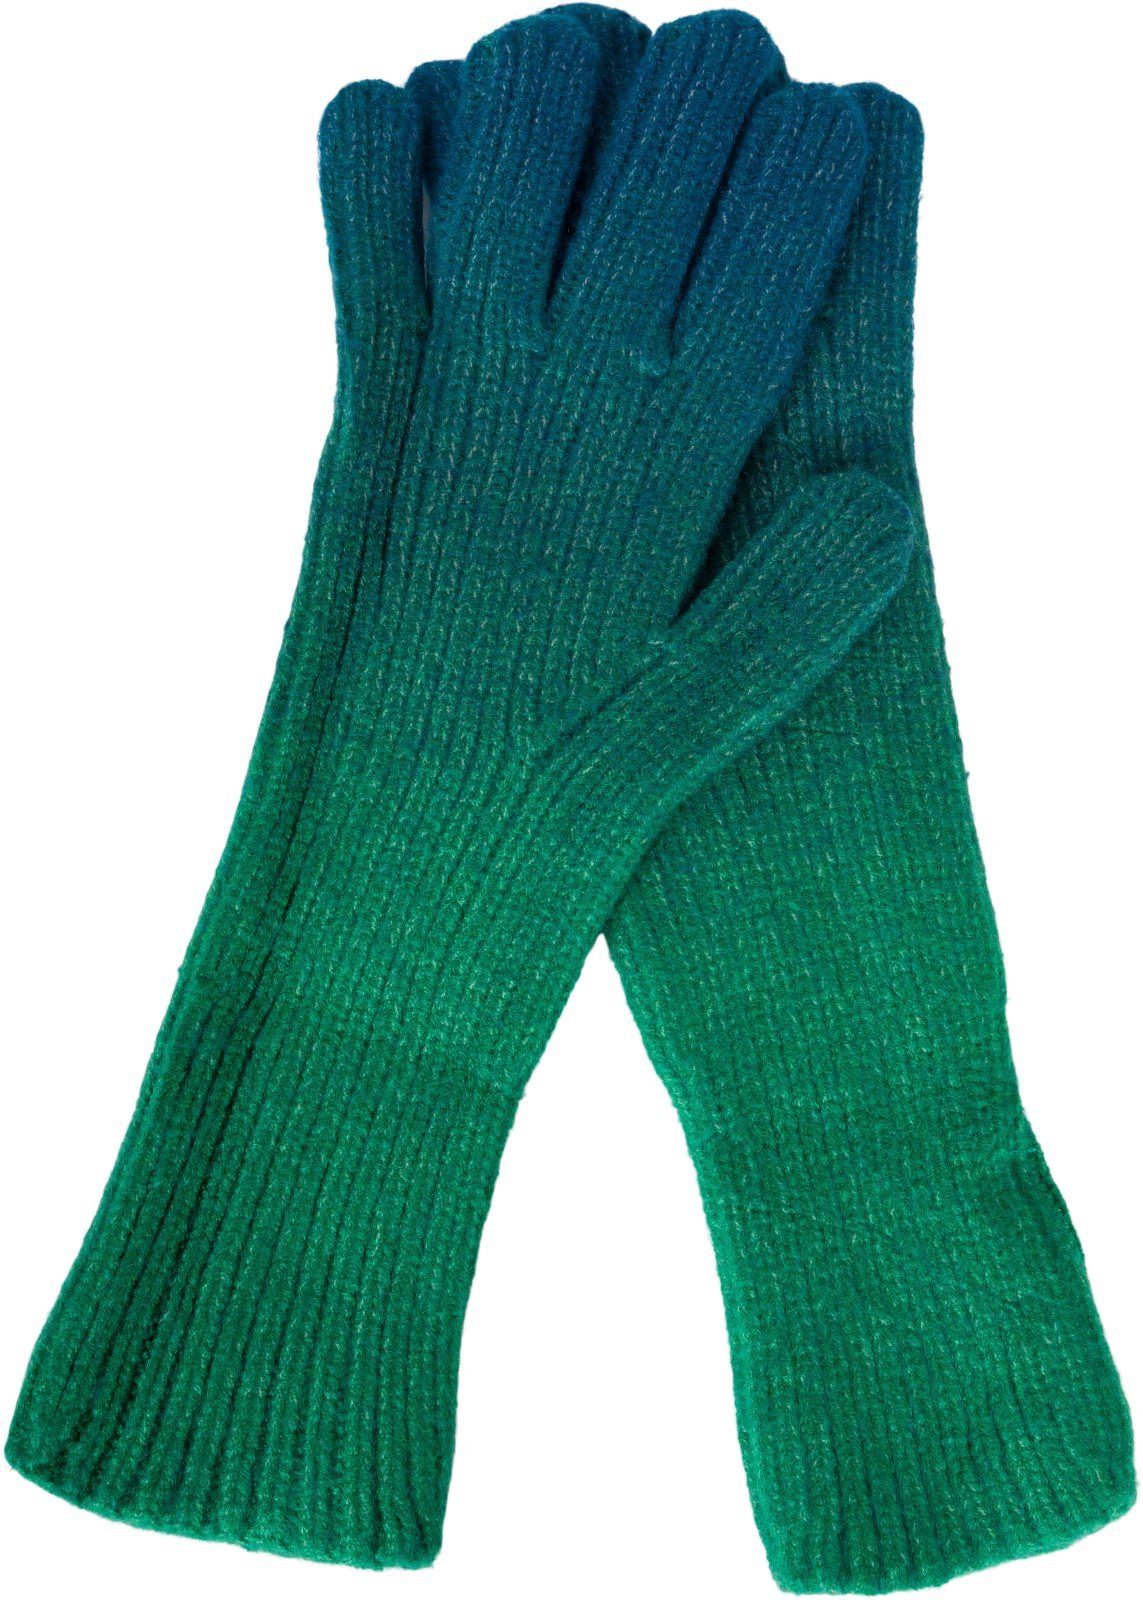 Petrol-Grün Strickhandschuhe Muster Farbverlauf Strickhandschuhe styleBREAKER